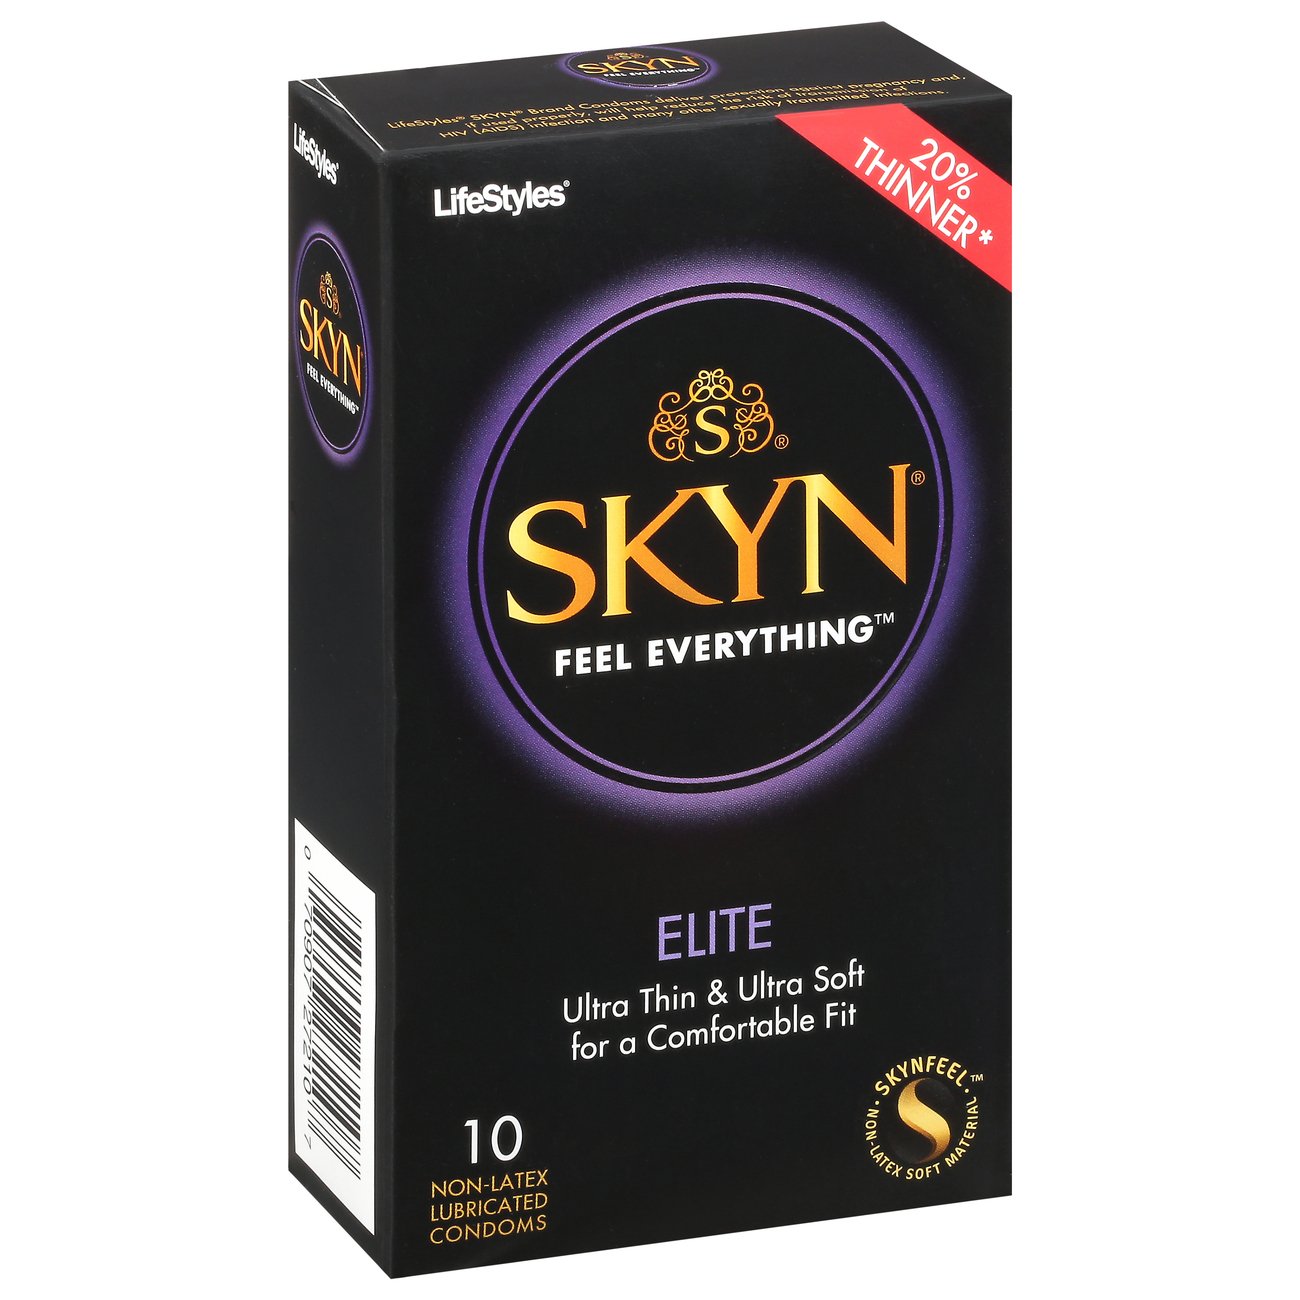 Skyn Elite Condoms Shop Condoms & Contraception at HEB